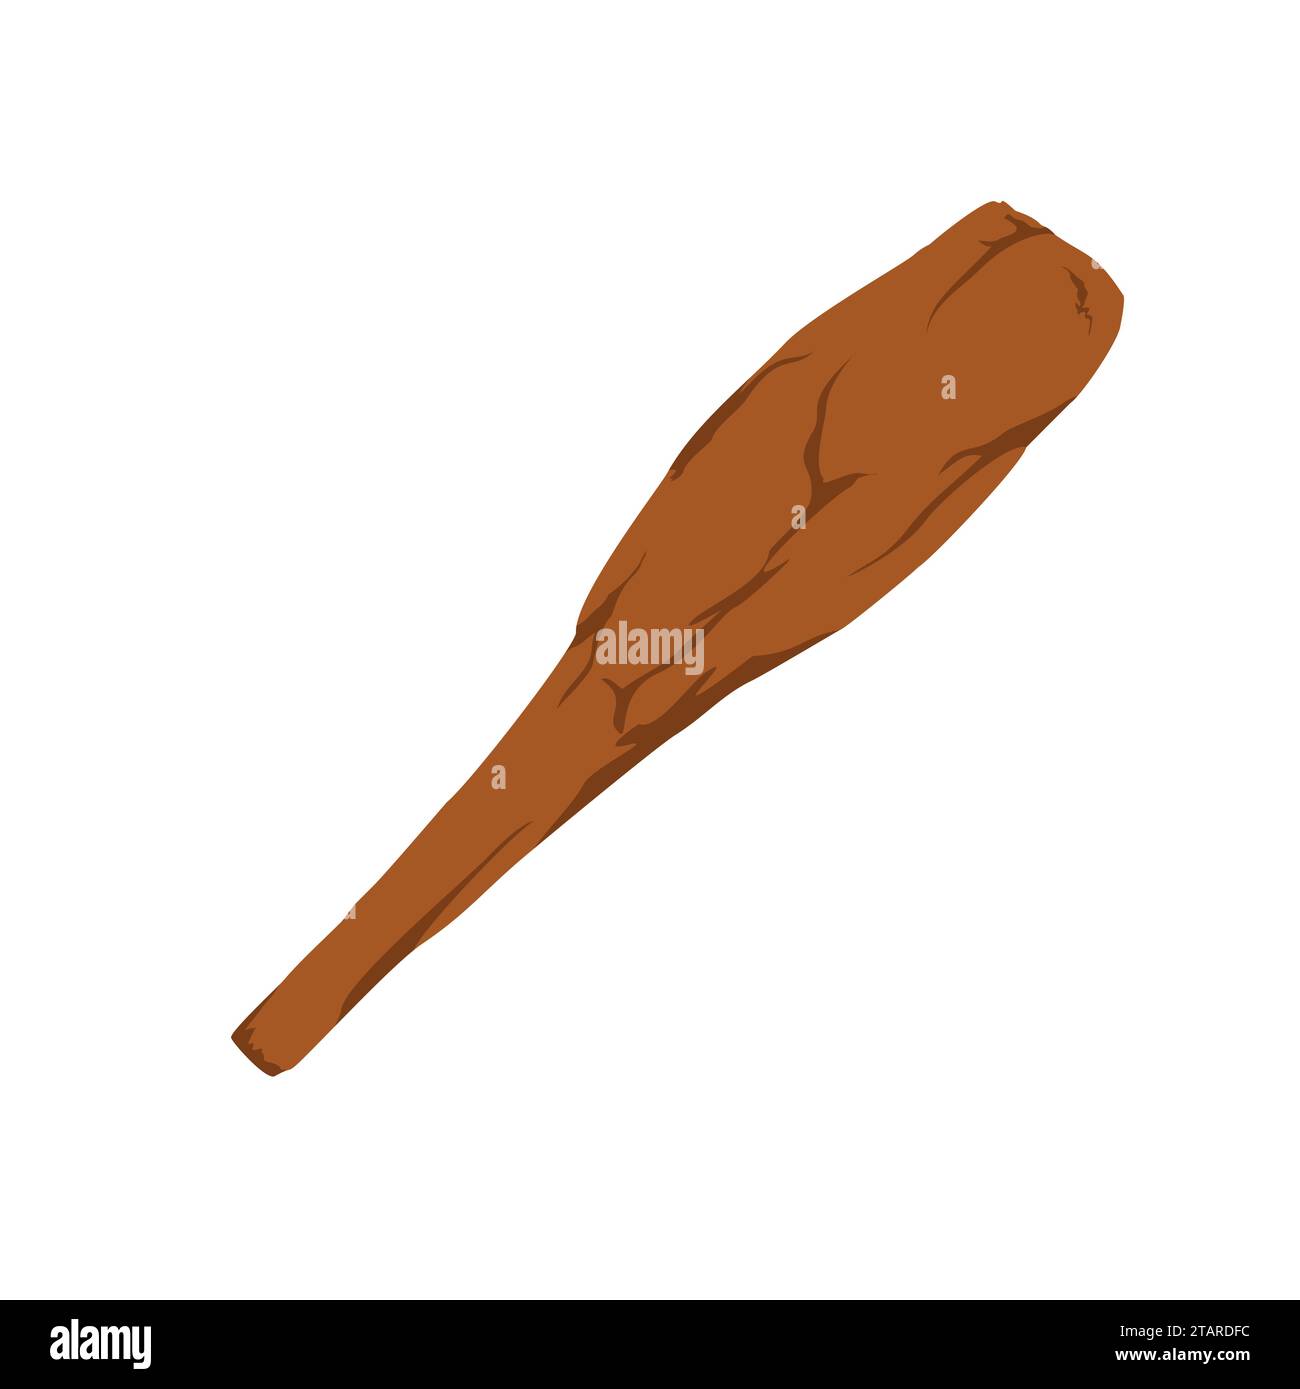 Cudgel o bastoncino di legno isolato su sfondo bianco. Arma a perno dell'età della pietra in stile piatto. Illustrazione vettoriale. Illustrazione Vettoriale